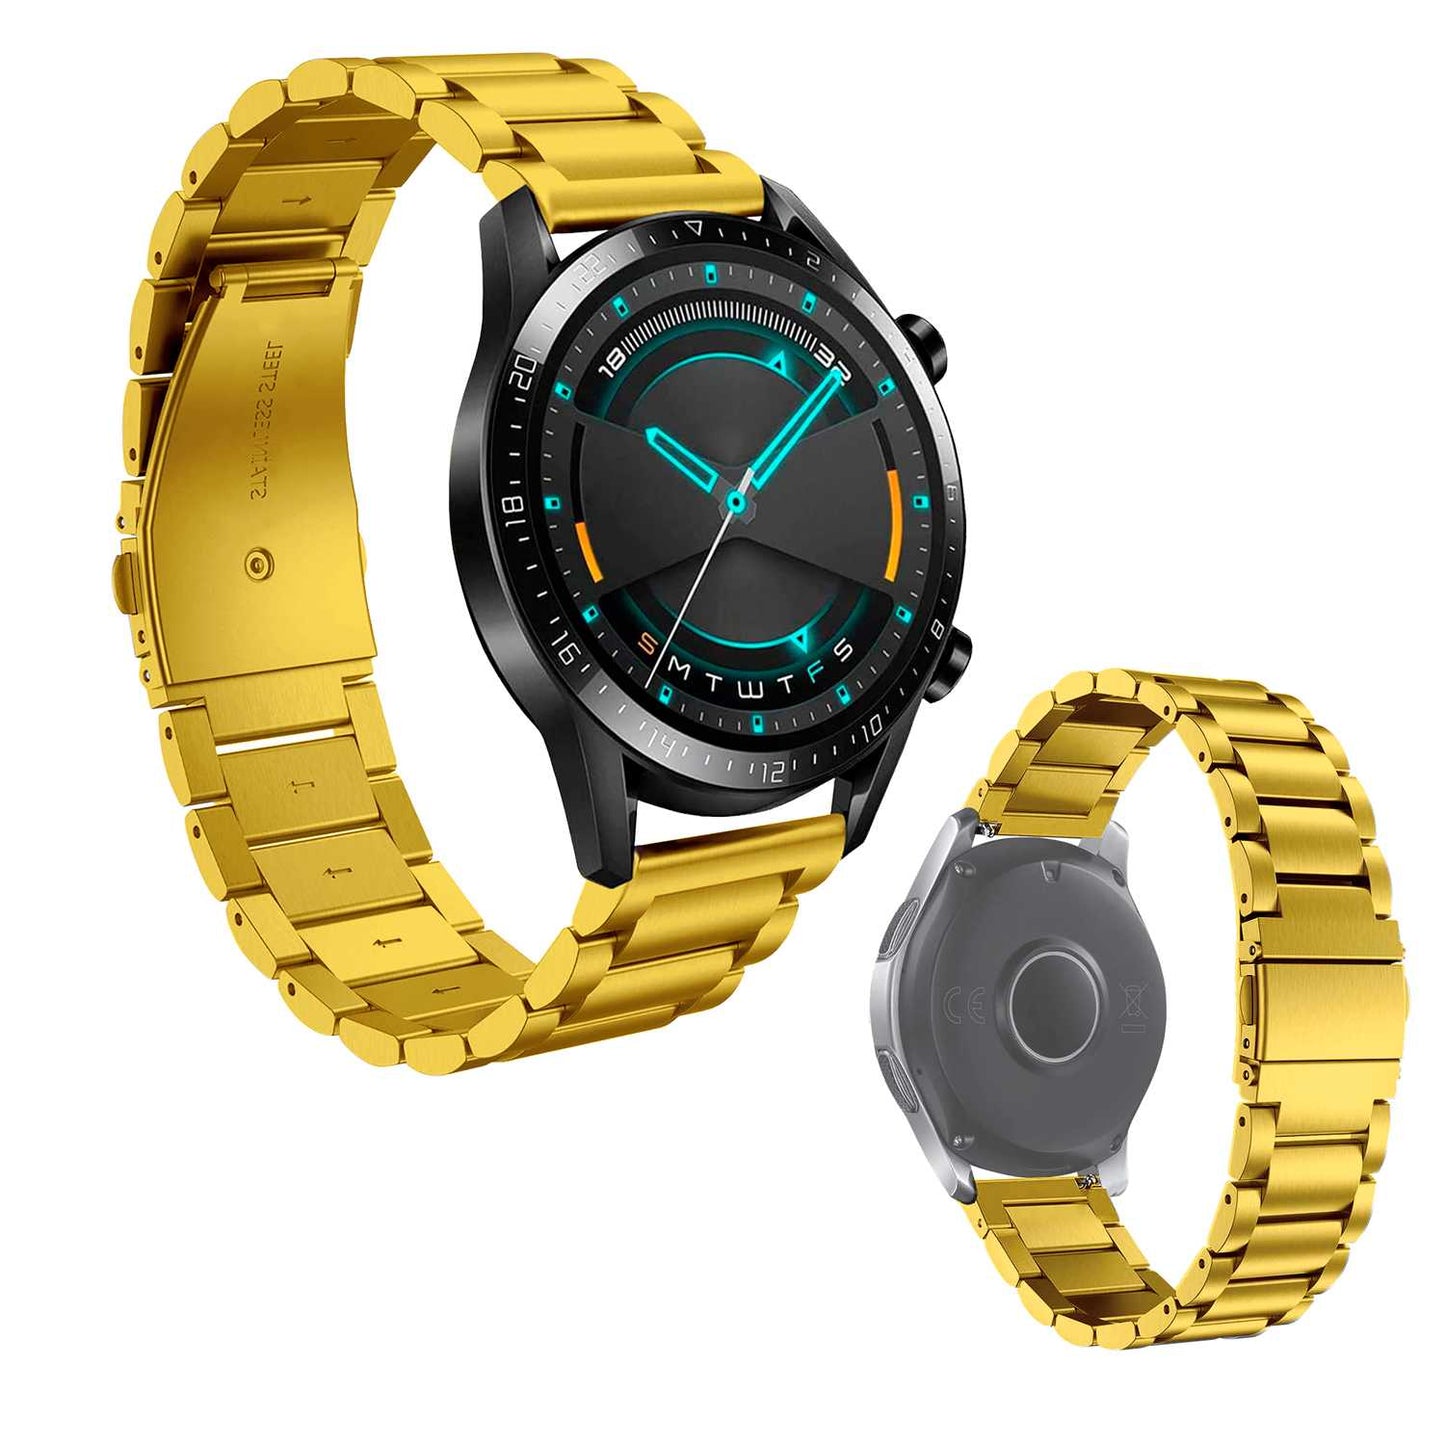 Correa Metálica para Reloj de Liberación Rápida, Pulsera Reloj de Acero Inoxidable de Color Oro, Medida: 14mm